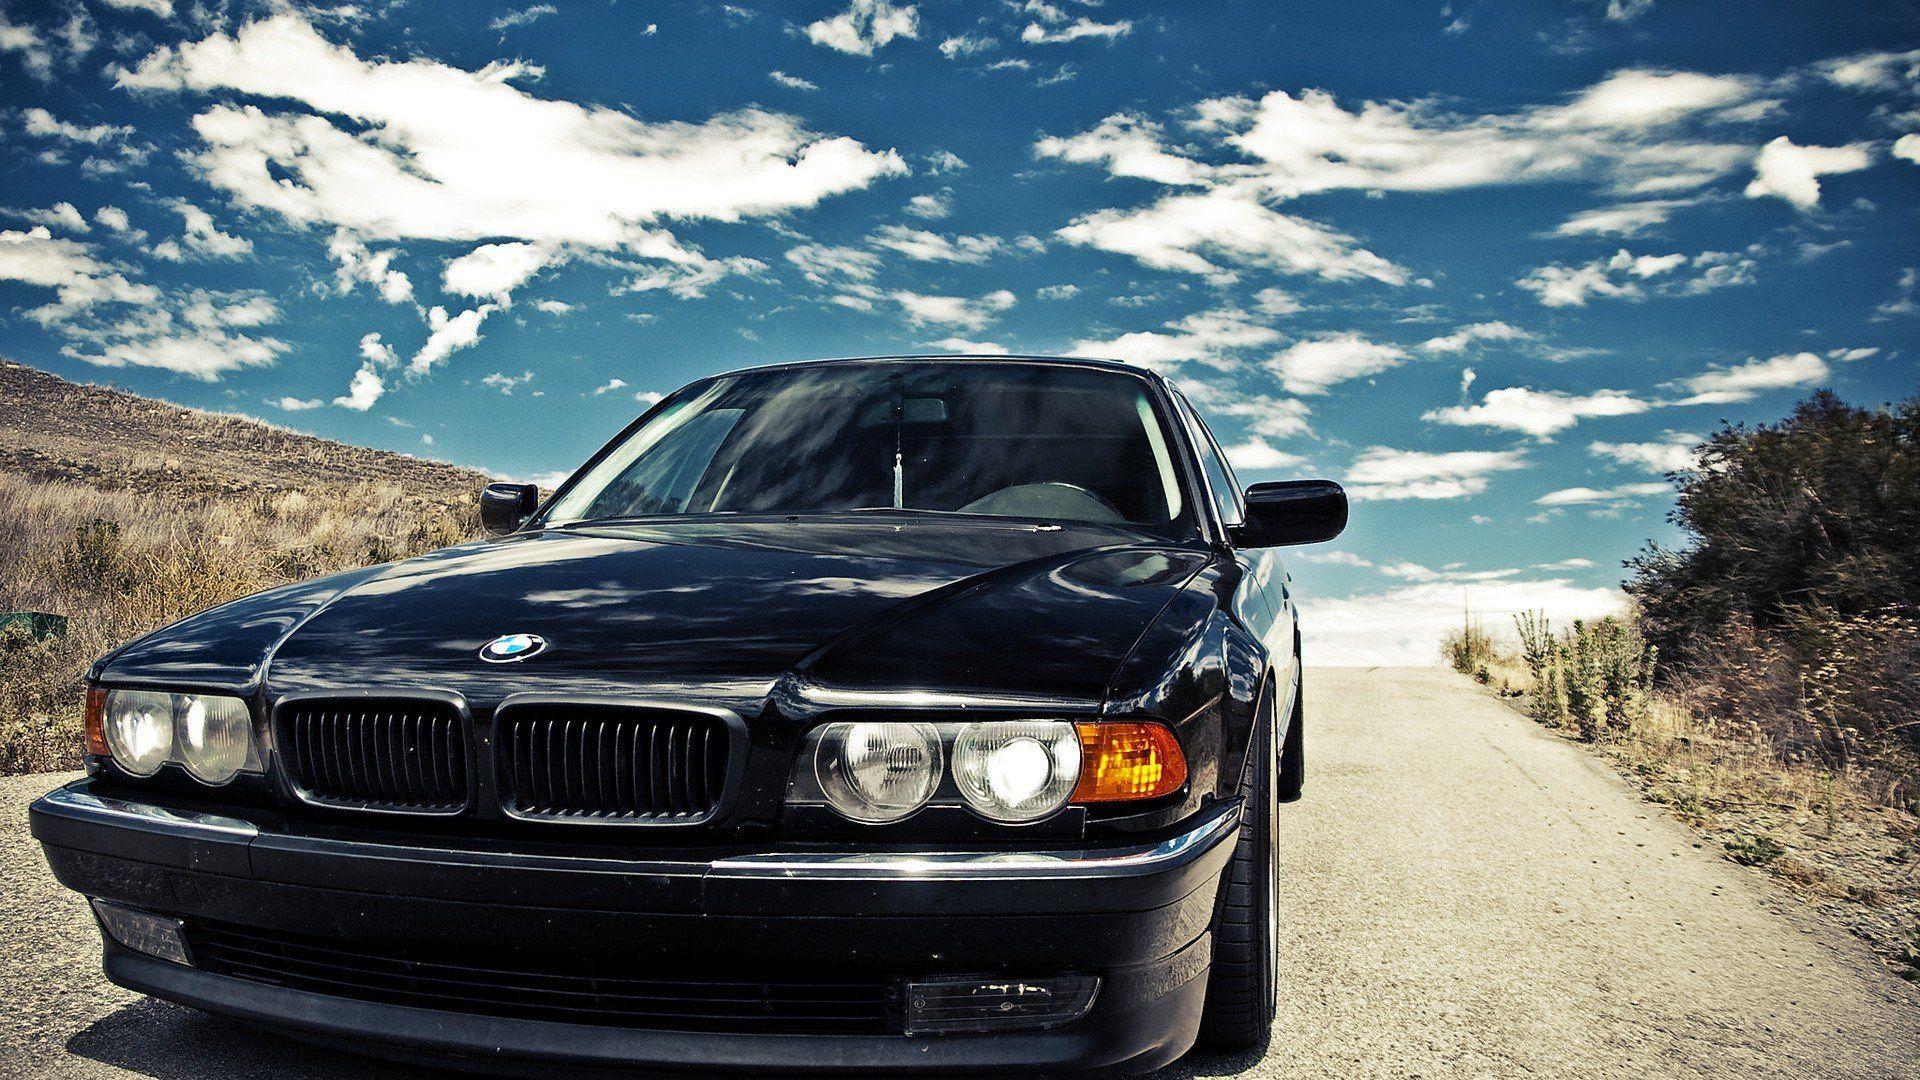 BMW black cars BMW E38 wallpaperx1080